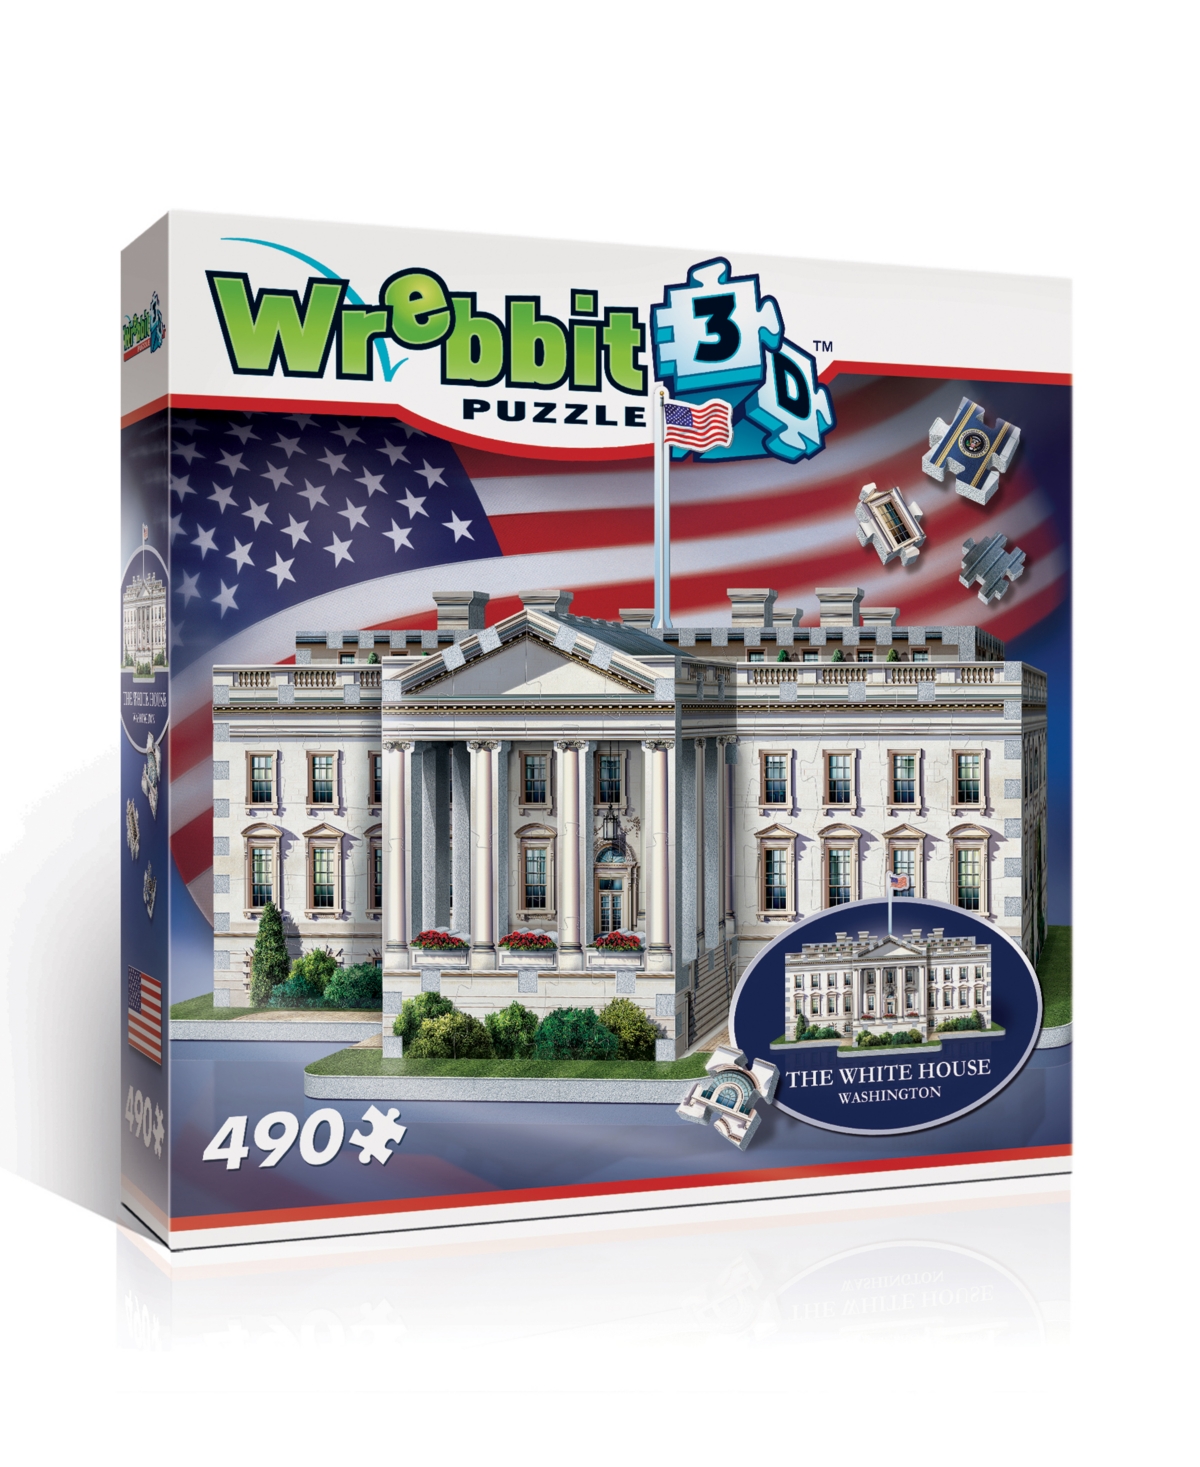 Masterpieces Puzzles Wrebbit The White House 3d Puzzle- 490 Pieces